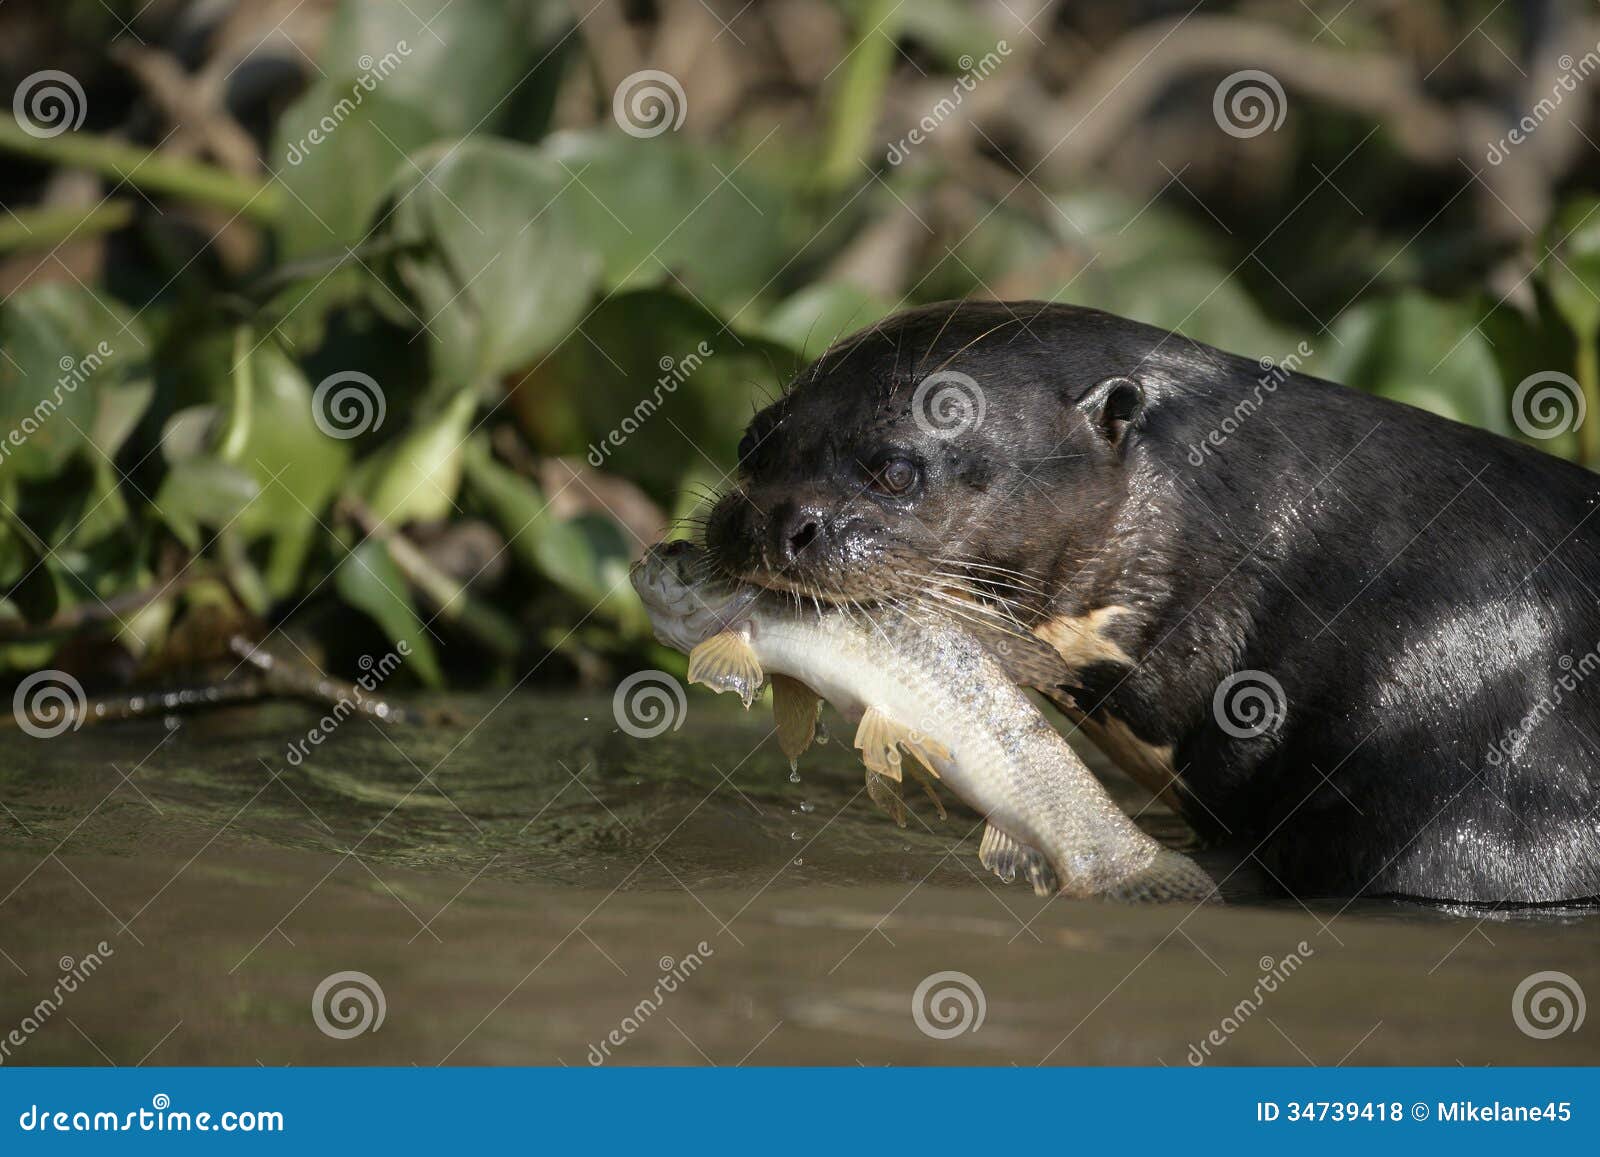 giant-river otter, pteronura brasiliensis